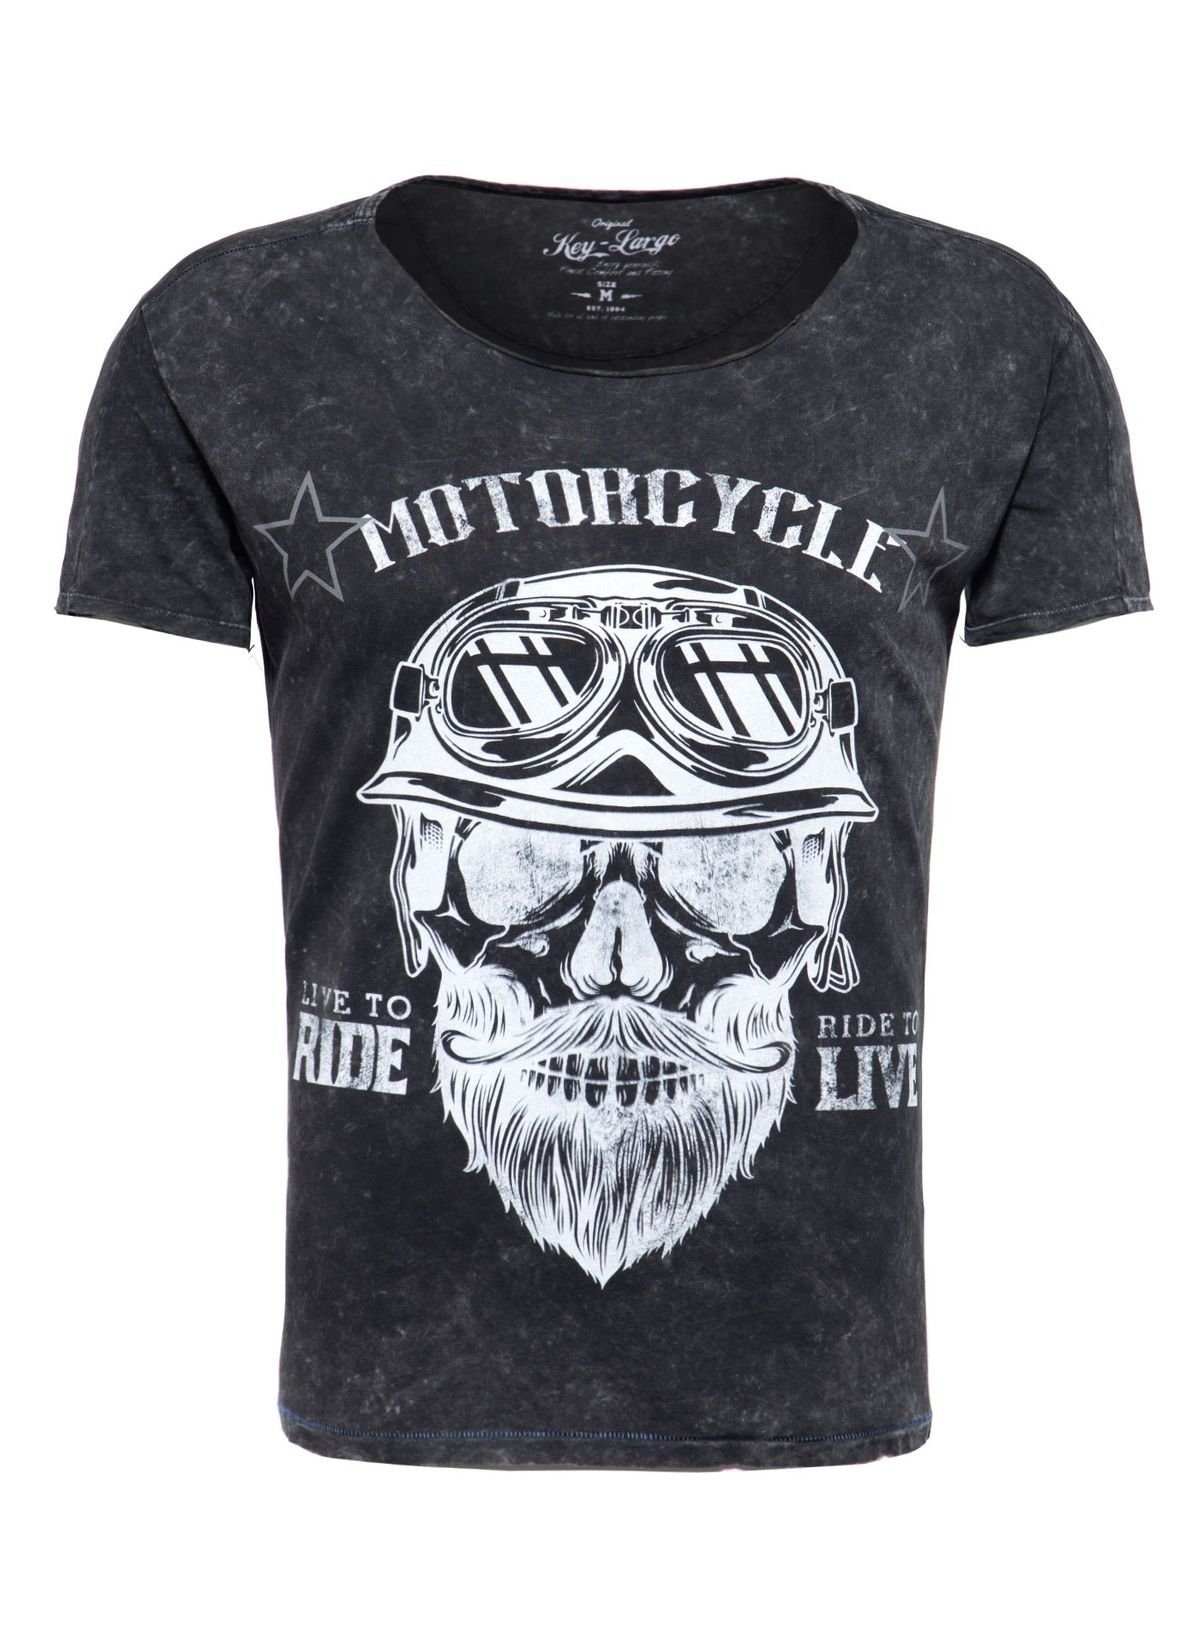 Herren fit Print bedruckt T-Shirt MT00203 Biker Rundhalsauschnitt Bearded Largo Schwarz Key für kurzarm Skull Motiv vintage Look slim